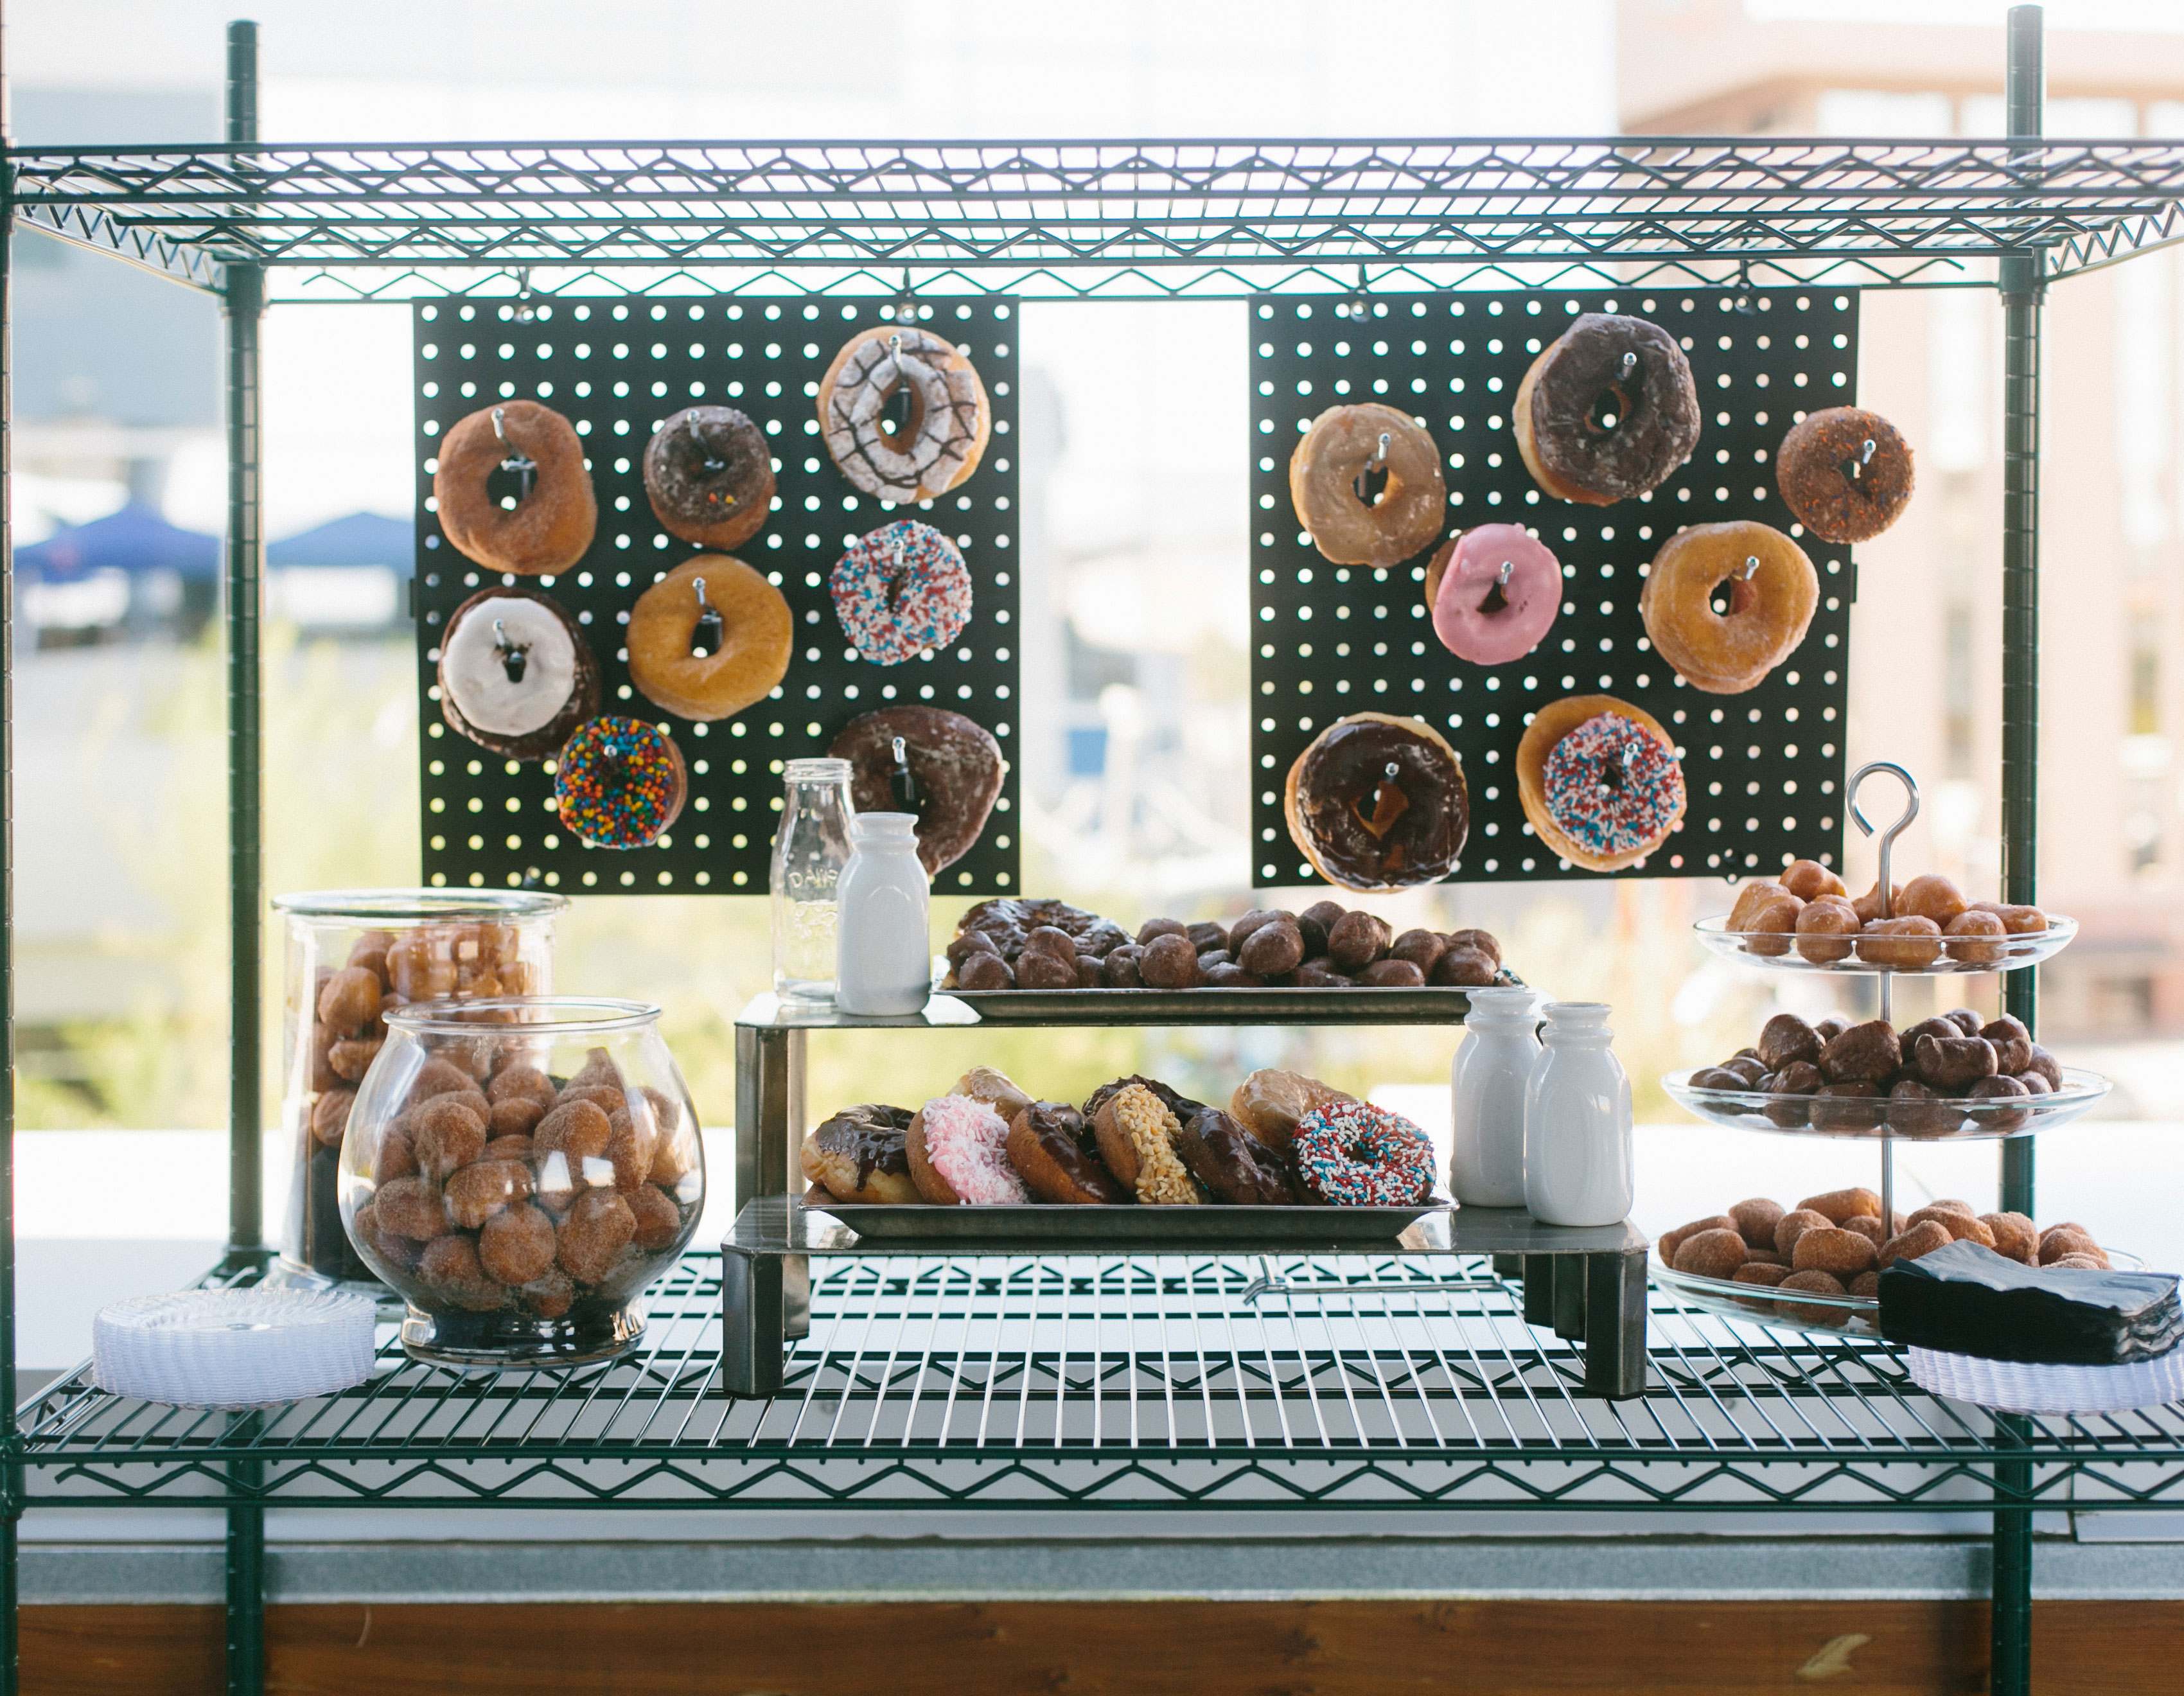 dessert donut station set up for a social event